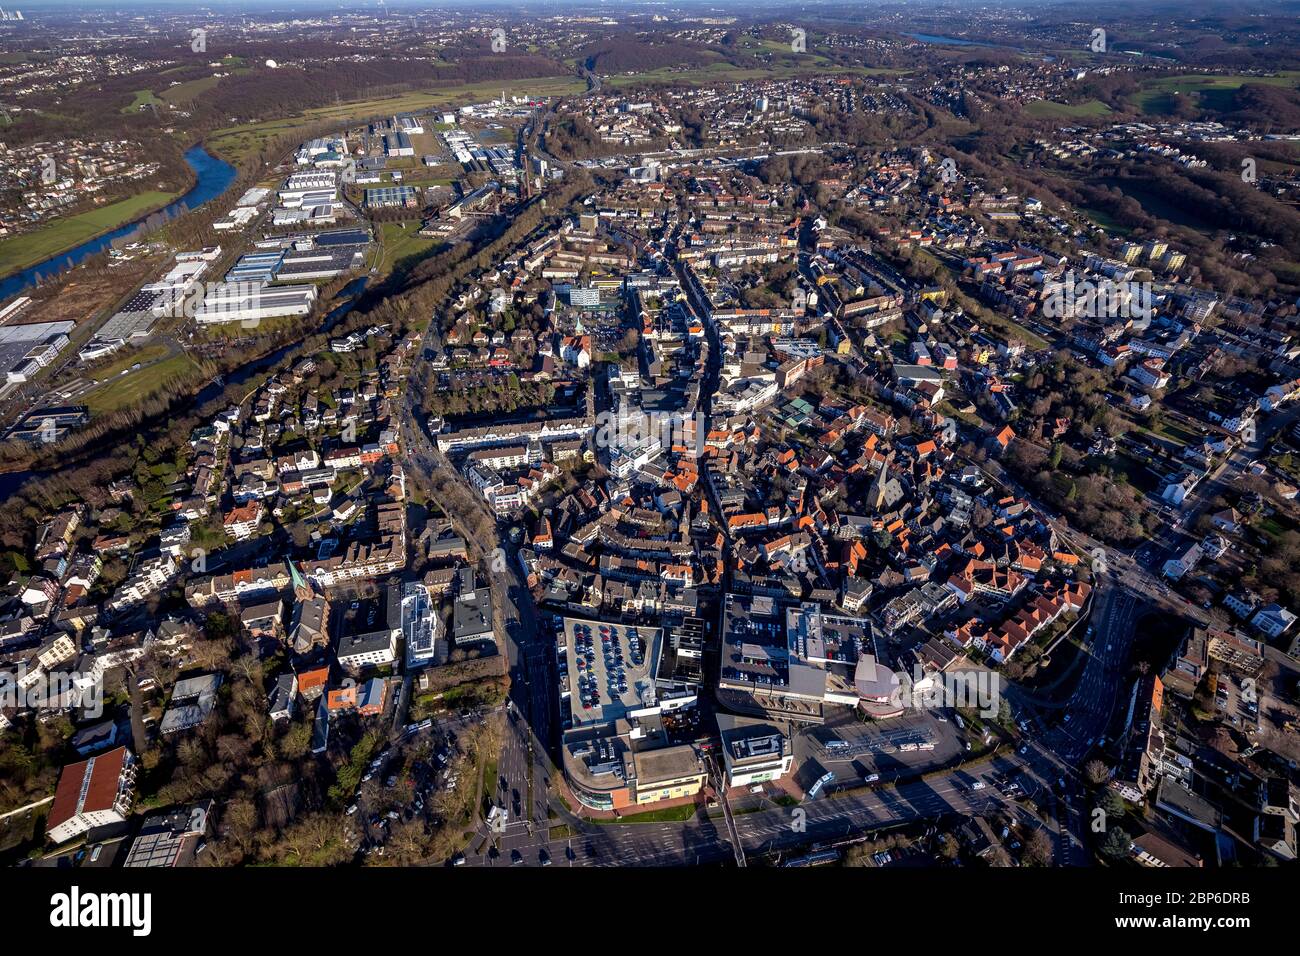 Vista aerea, vista sulla città e sul centro di Hattingen, fiume Ruhr, Hattingen, quartiere Ennepe-Ruhr, zona Ruhr, Renania settentrionale-Vestfalia, Germania Foto Stock